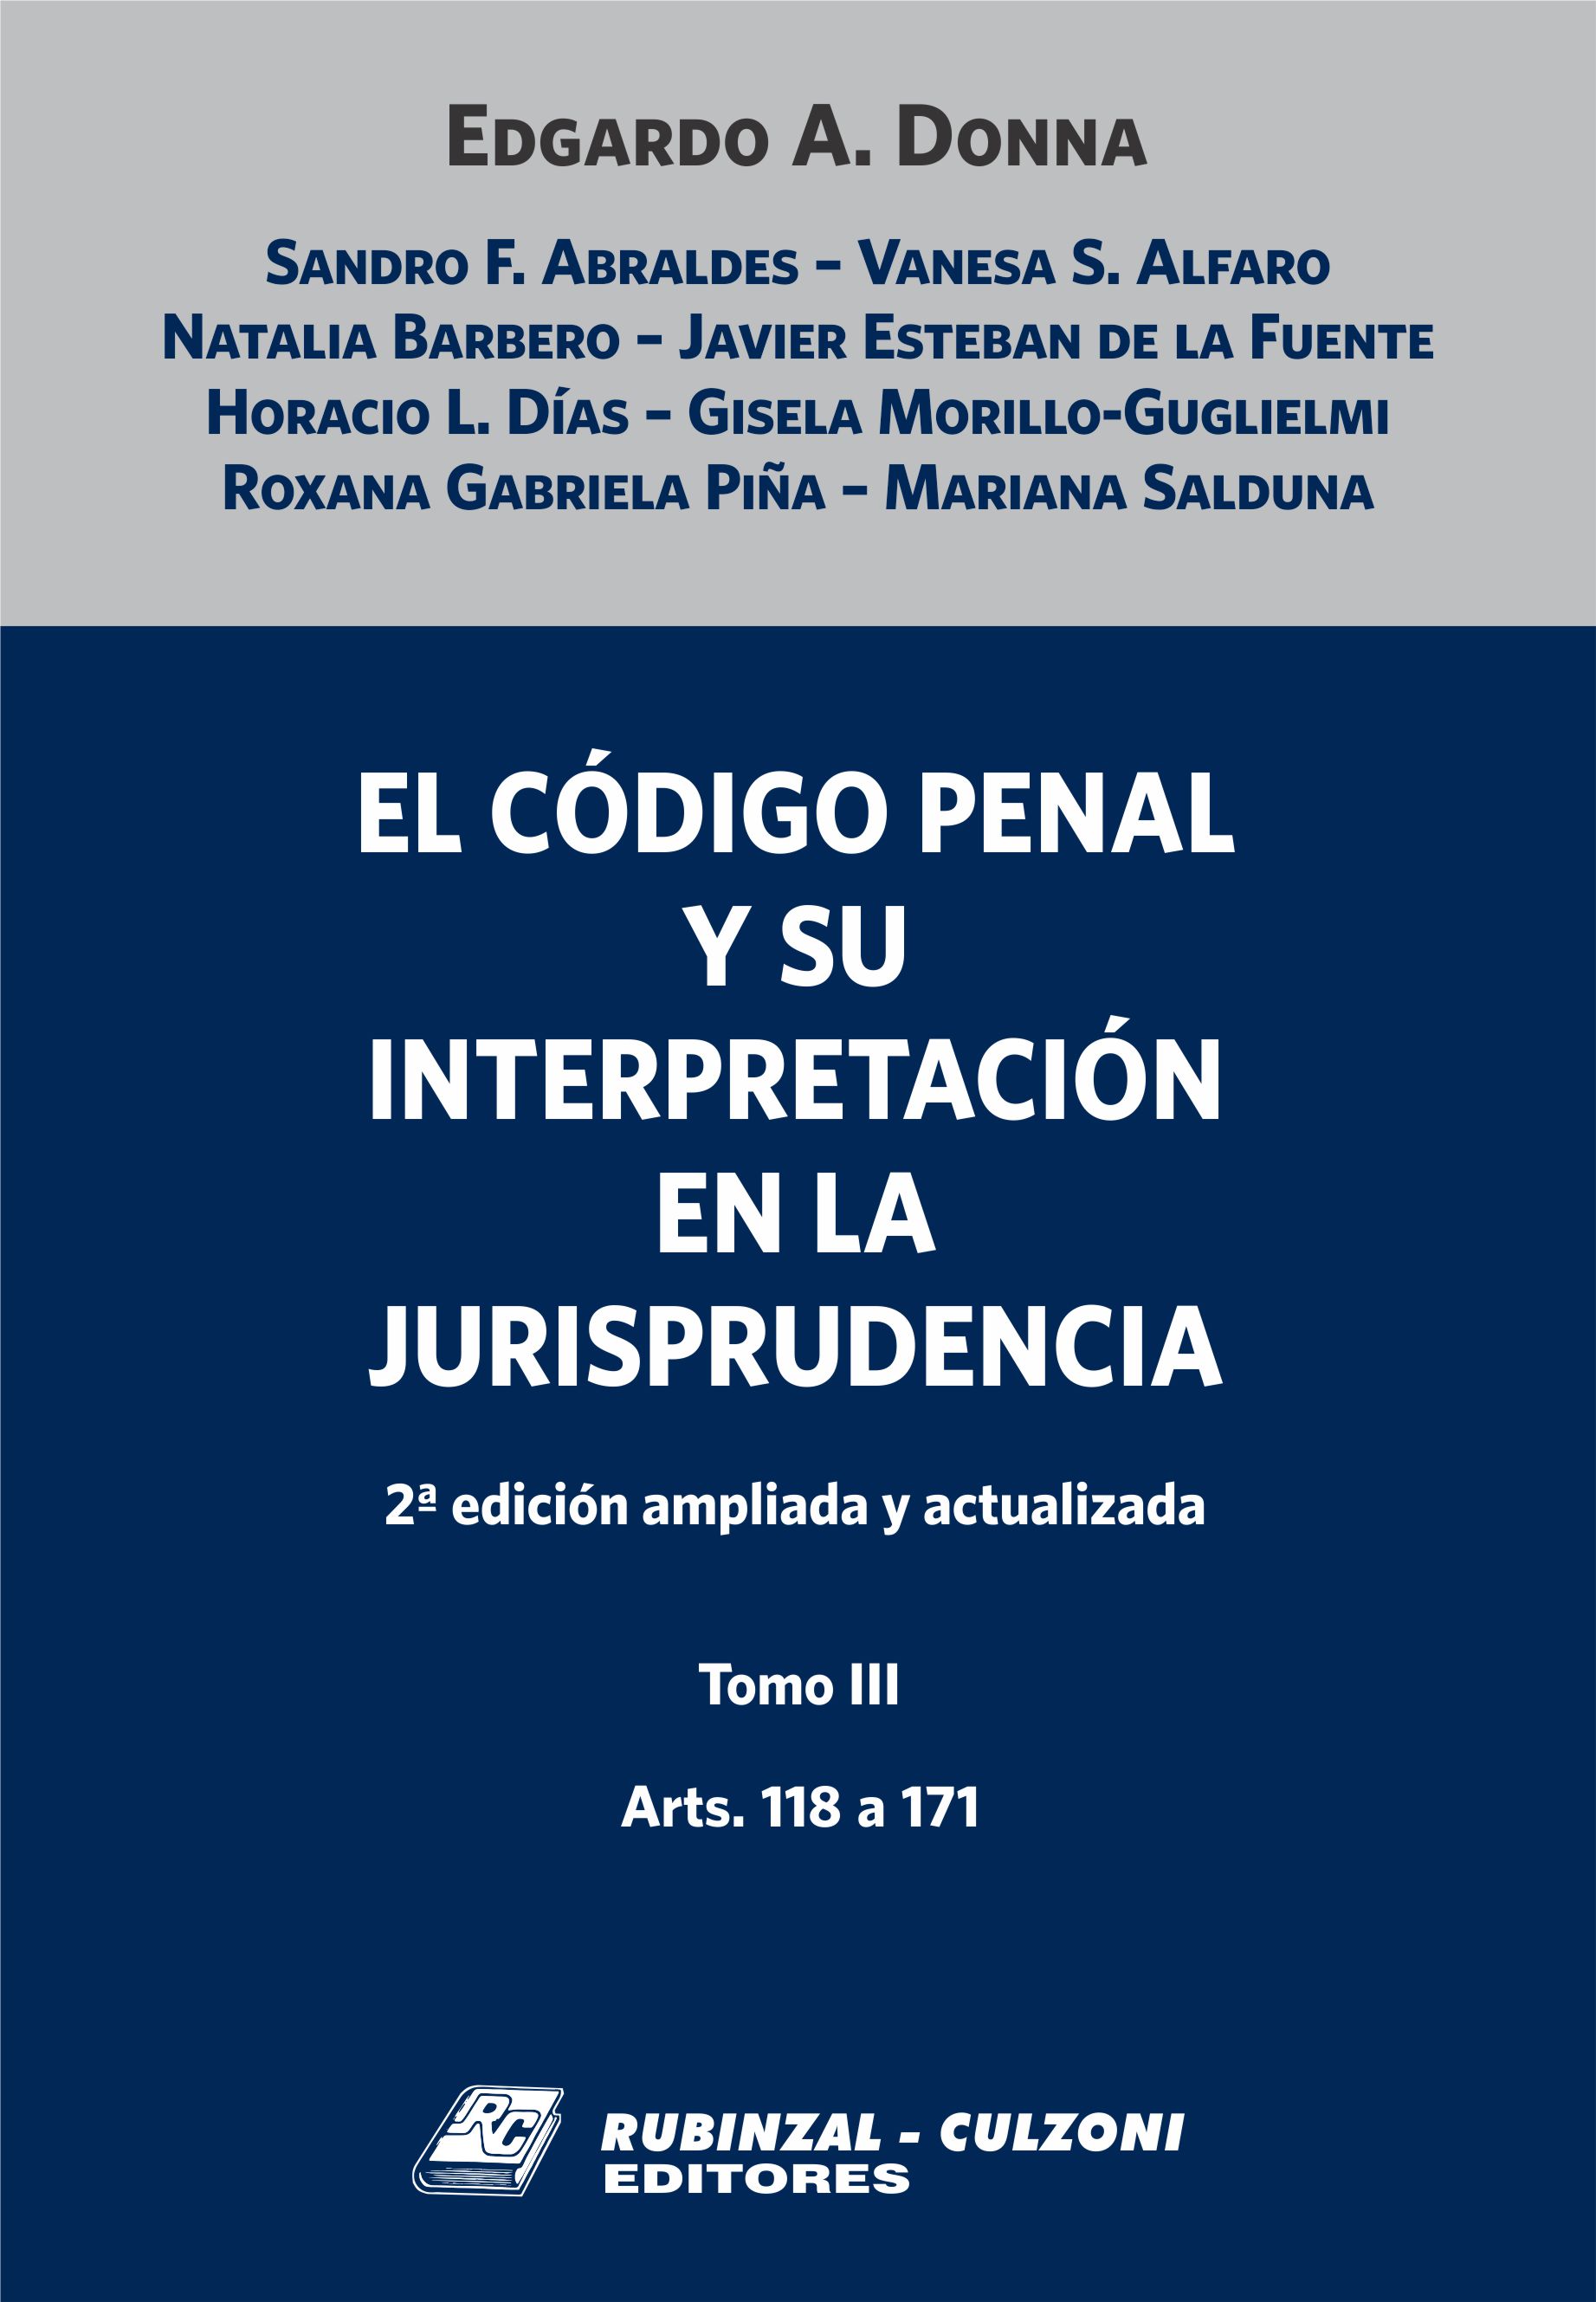 El Código Penal y su interpretación en la Jurisprudencia. - Tomo III. 2ª Edición ampliada y actualizada.